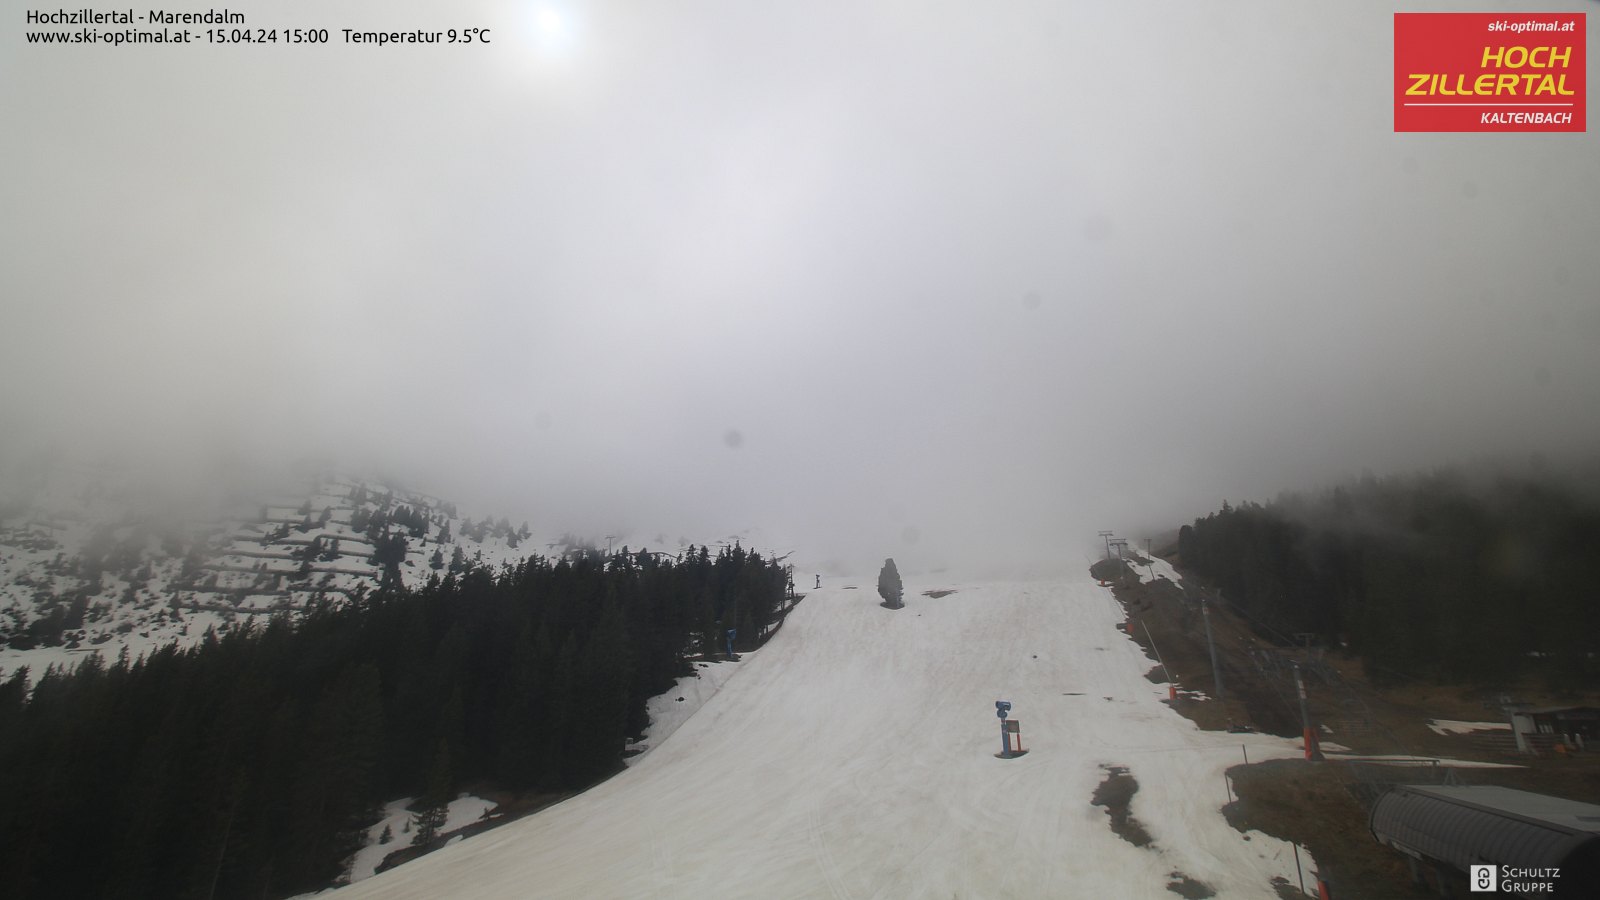 Hochzillertal webcam - Marendalm ski station